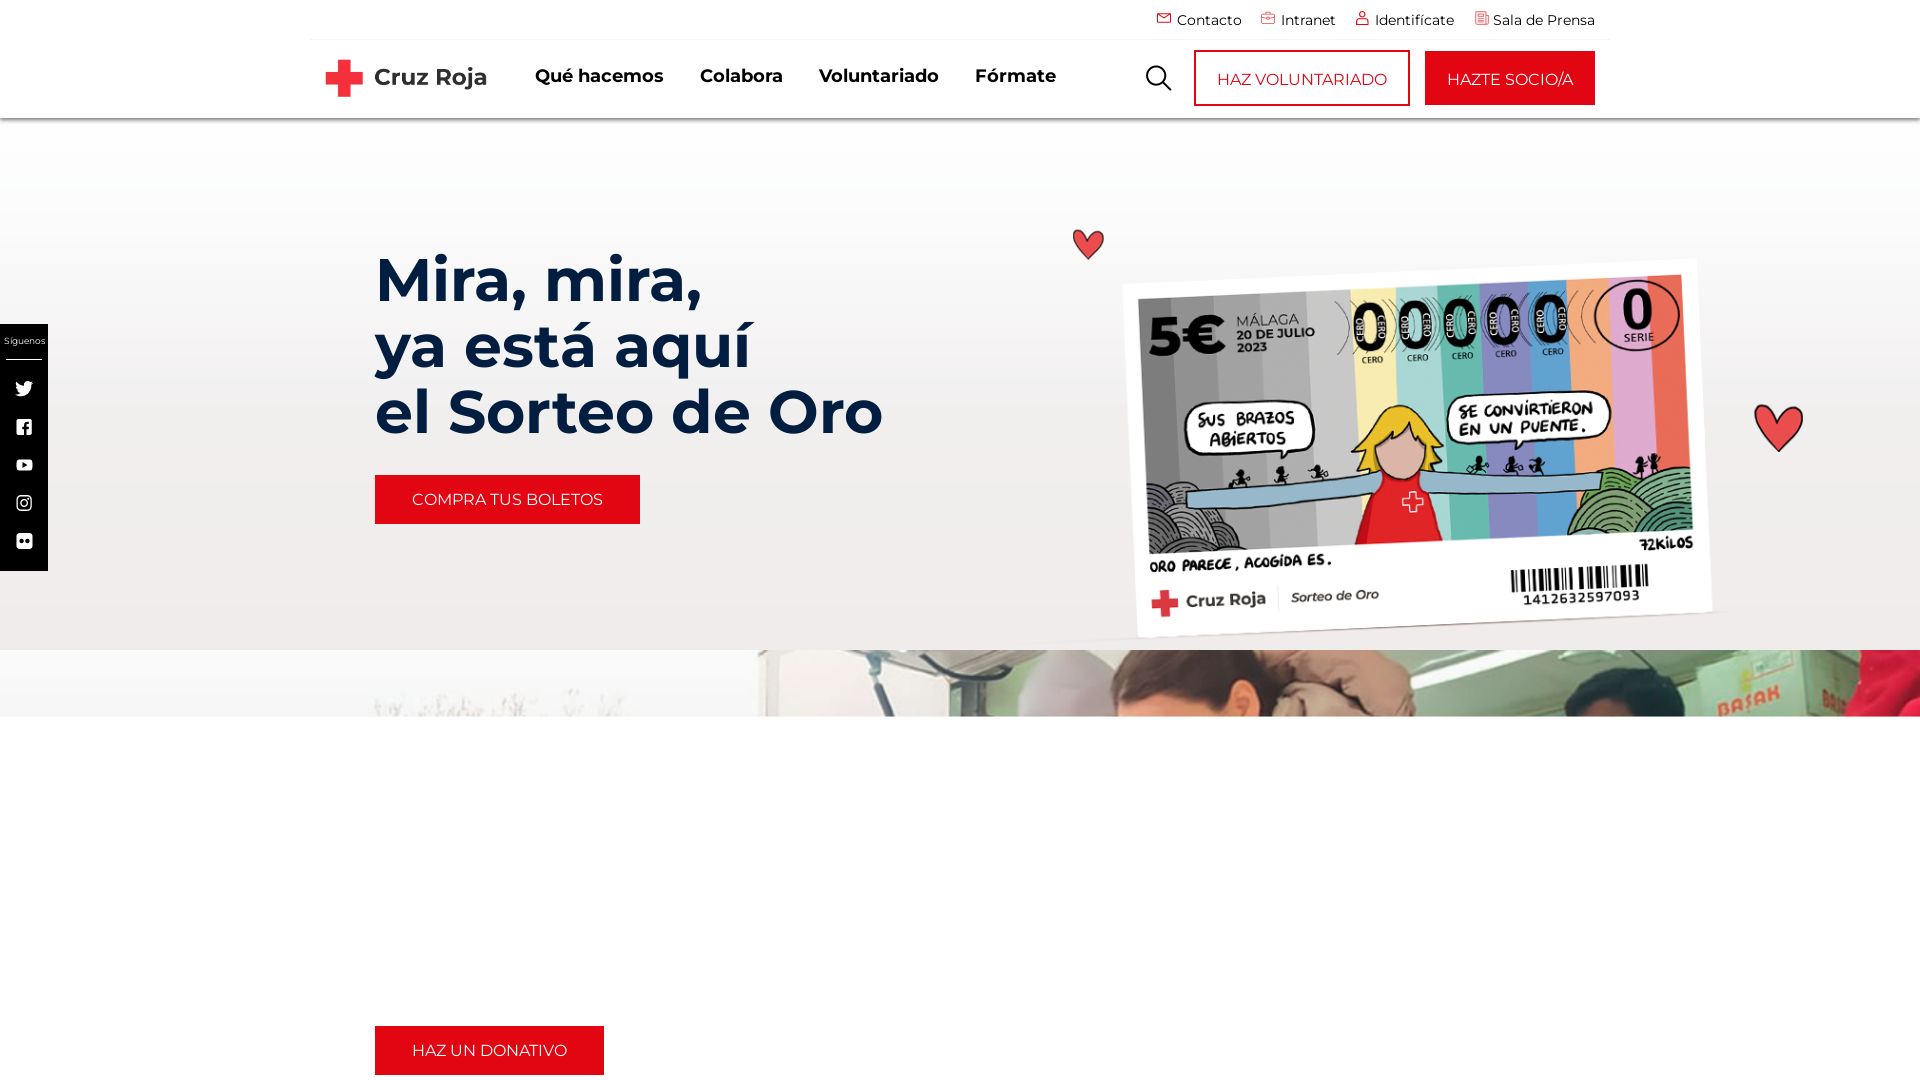 Website status cruzroja.es is   ONLINE